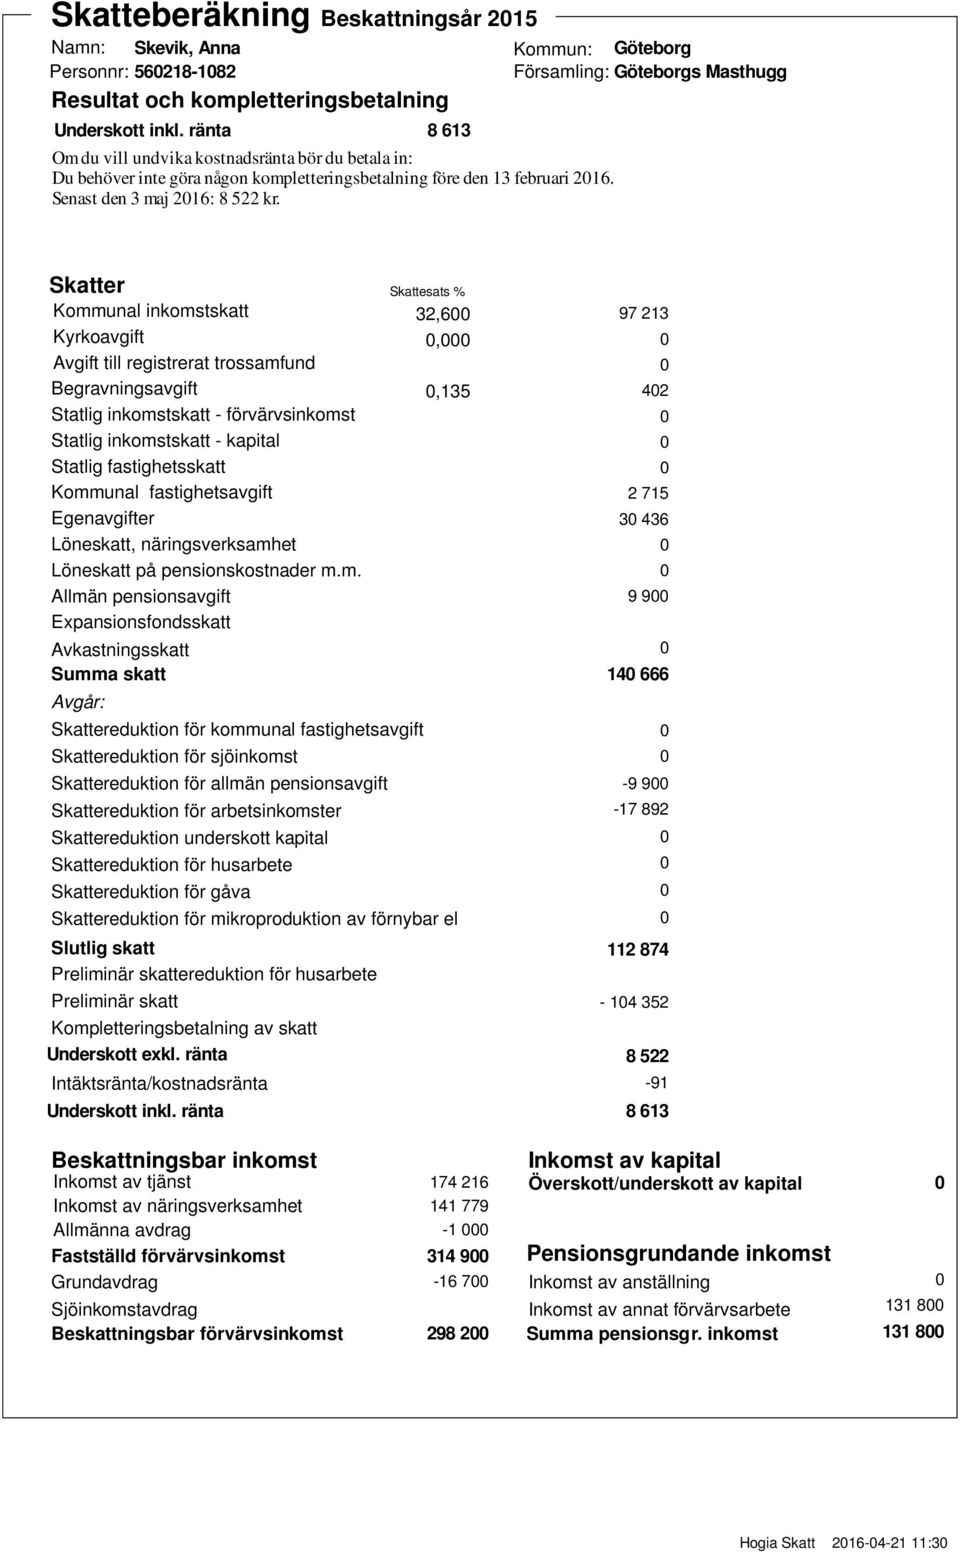 Göteborg Göteborgs Masthugg Skatter Kommunal inkomstskatt Kyrkoavgift Avgift till registrerat trossamfund Begravningsavgift Statlig inkomstskatt förvärvsinkomst Statlig inkomstskatt kapital Statlig